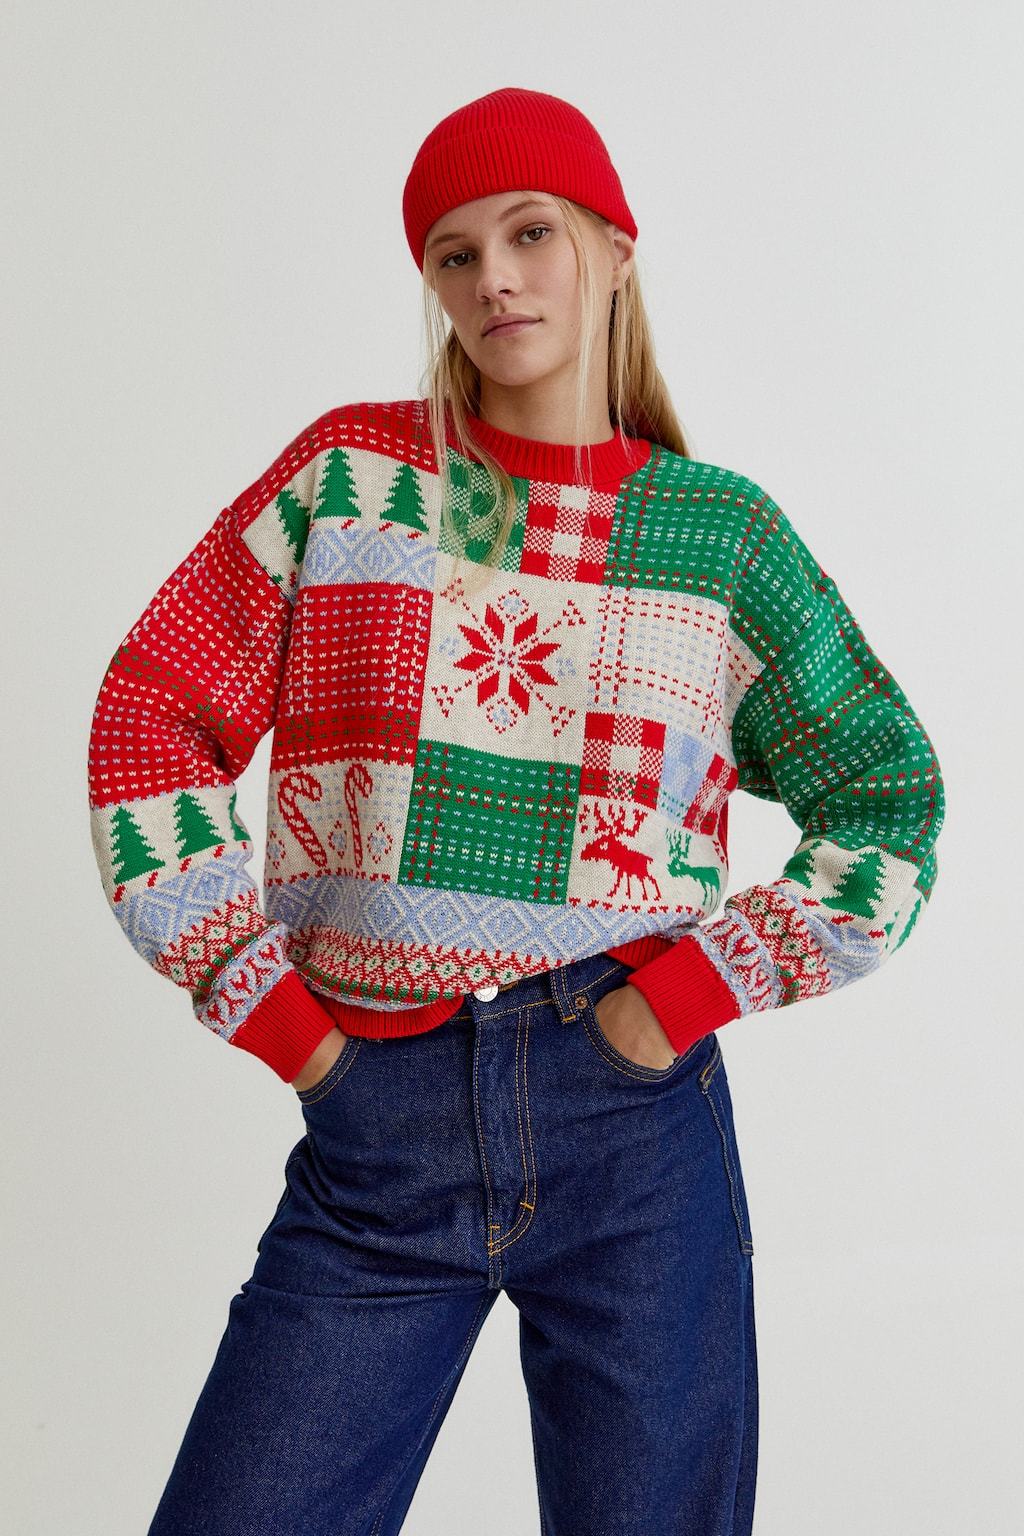 El jersey navideño que supera todos los demás ugly sweaters | Moda